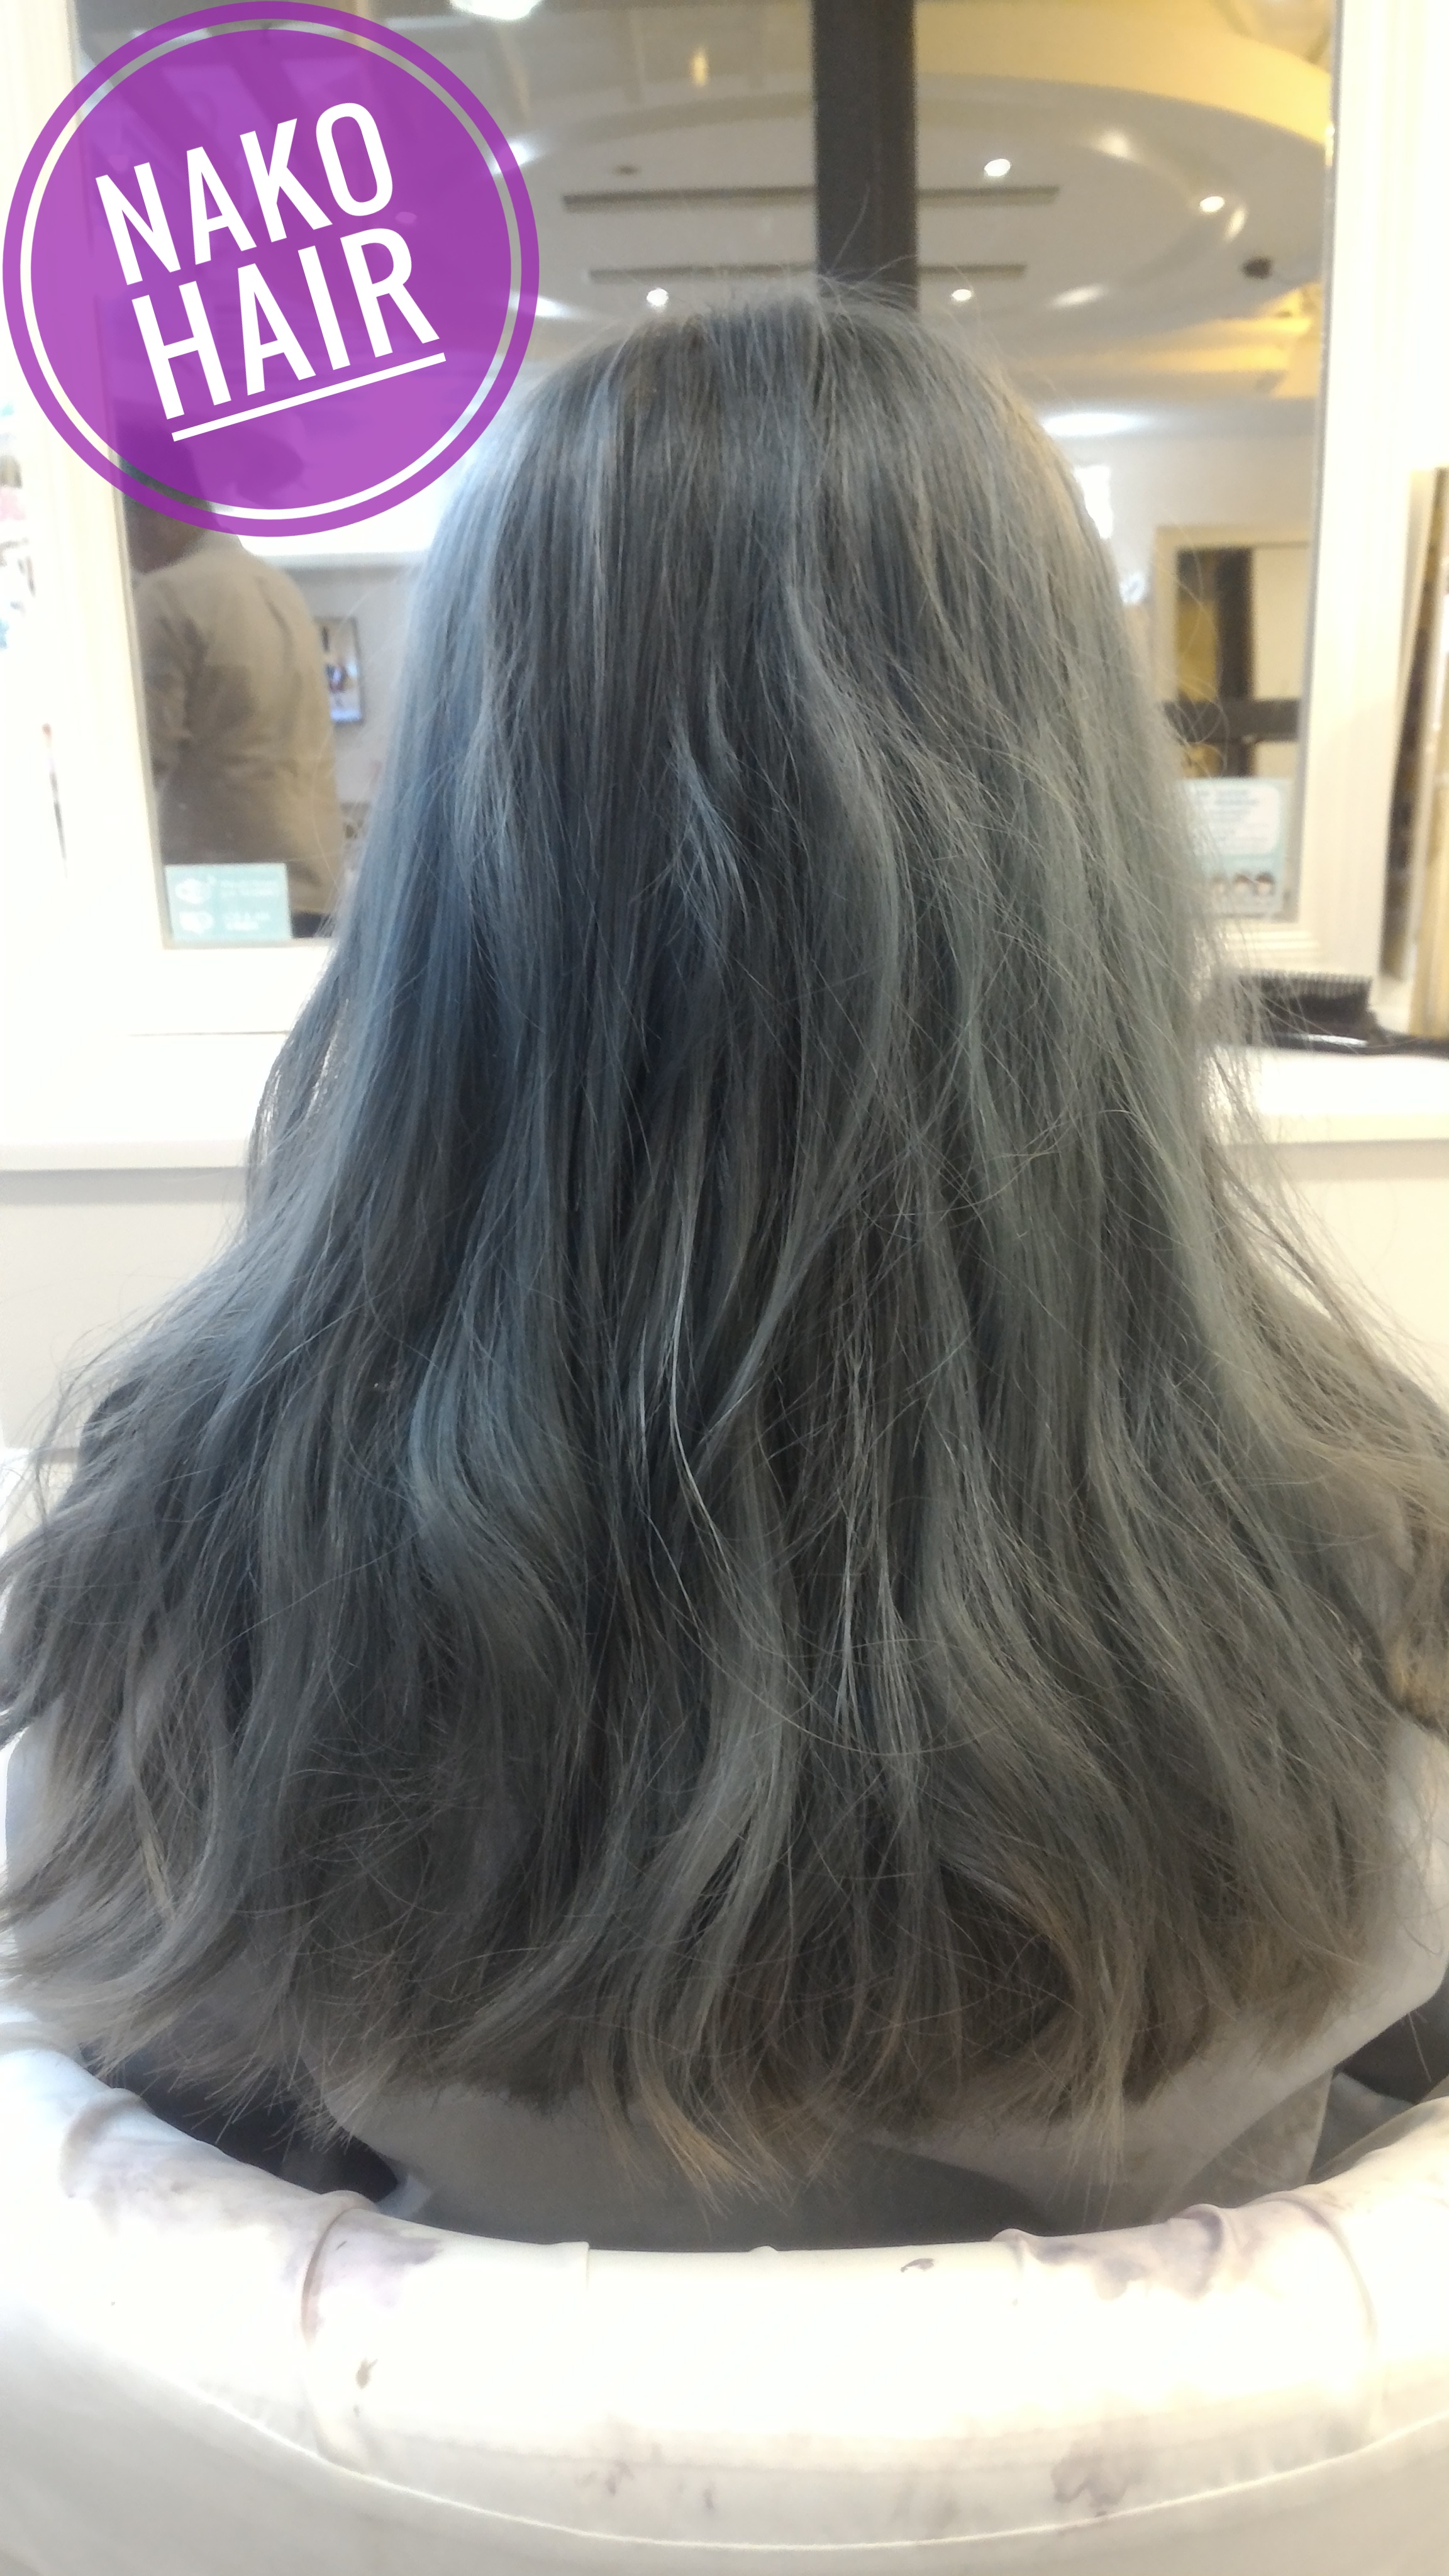 髮型作品參考:日本風(長度)髮型(灰色)